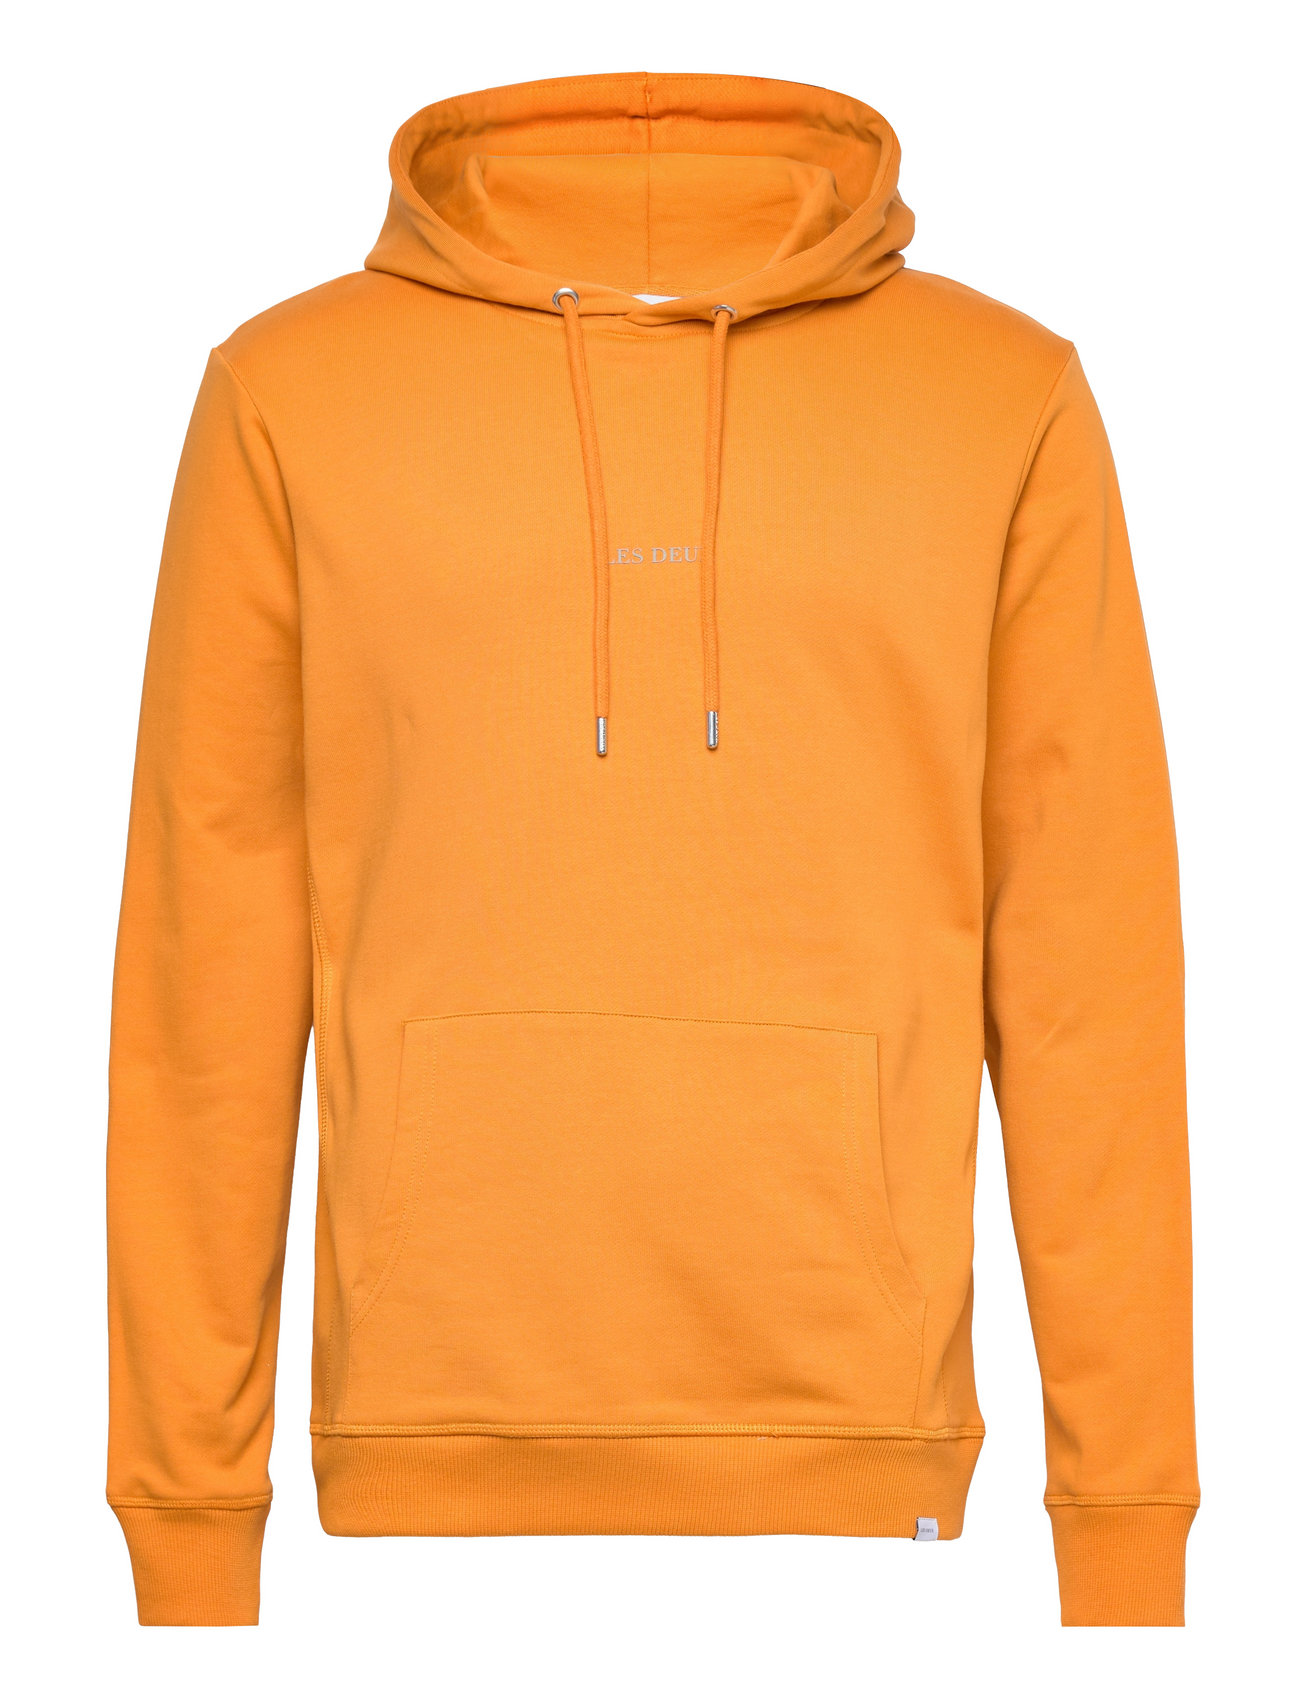 Lens Hoodie Tops Sweatshirts & Hoodies Hoodies Orange Les Deux